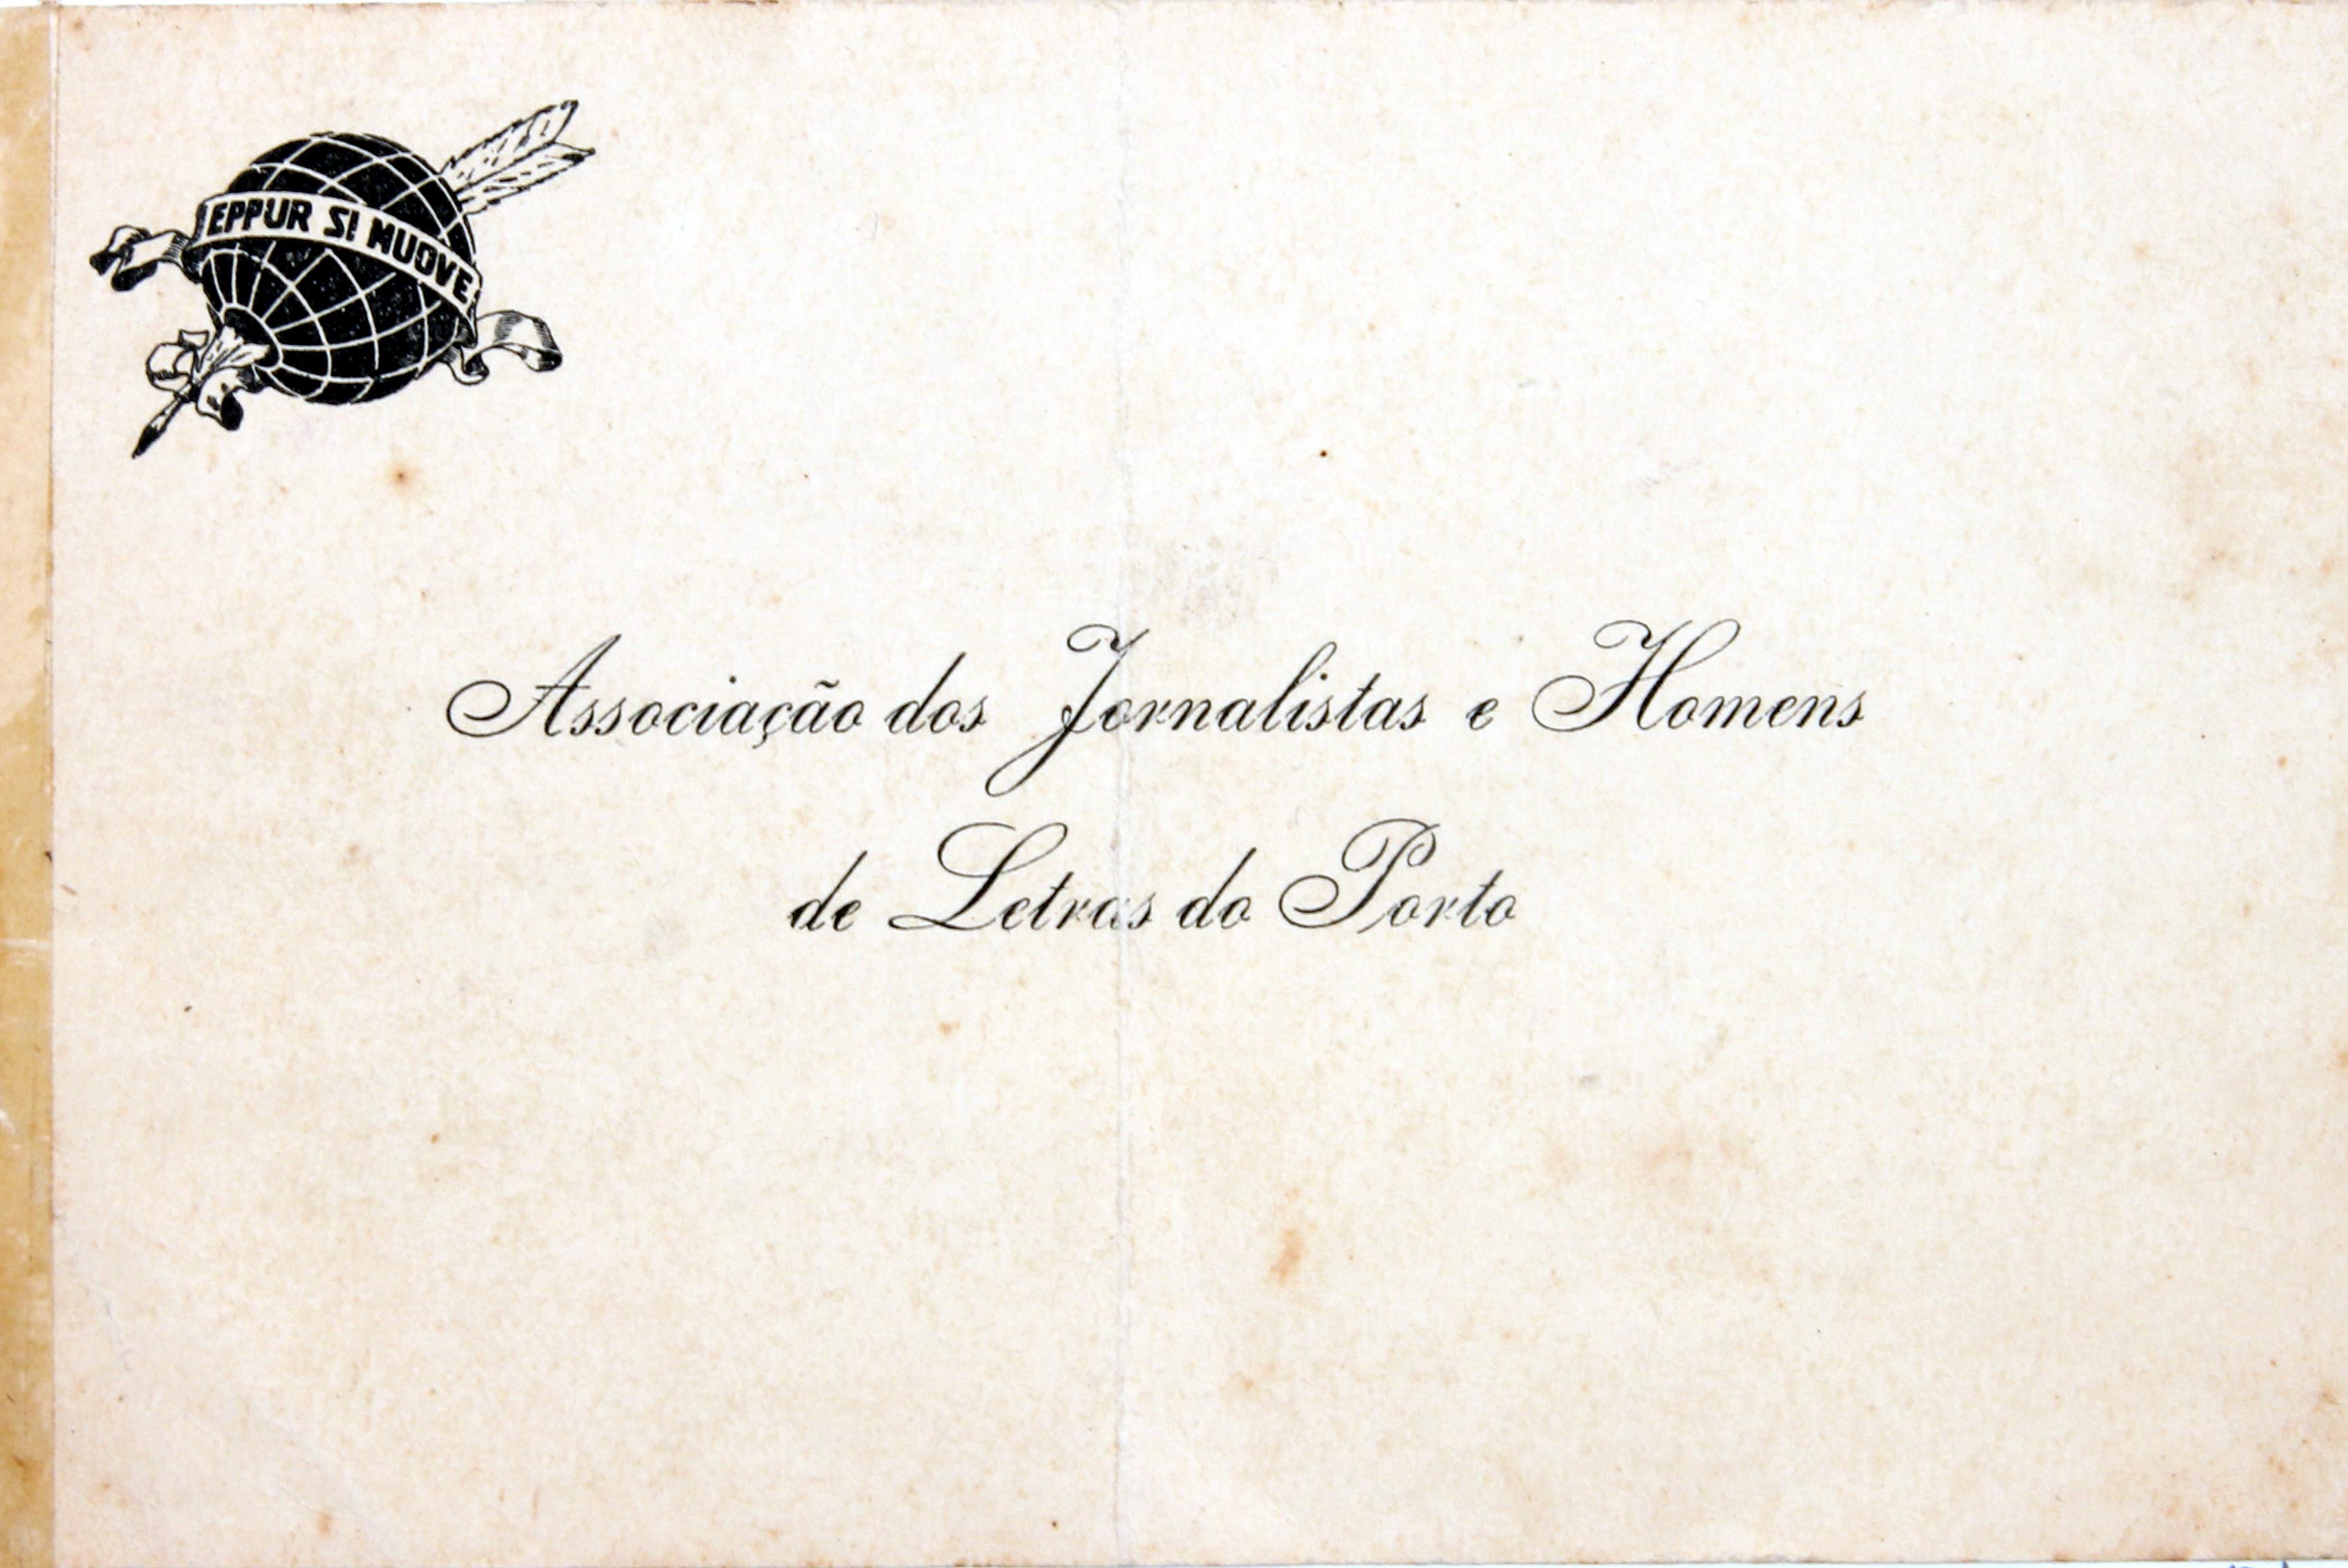 Cruz Caldas (2) : 1928-1946 : Associação dos Jornalistas e Homens de Letras do Porto : cartão de visita